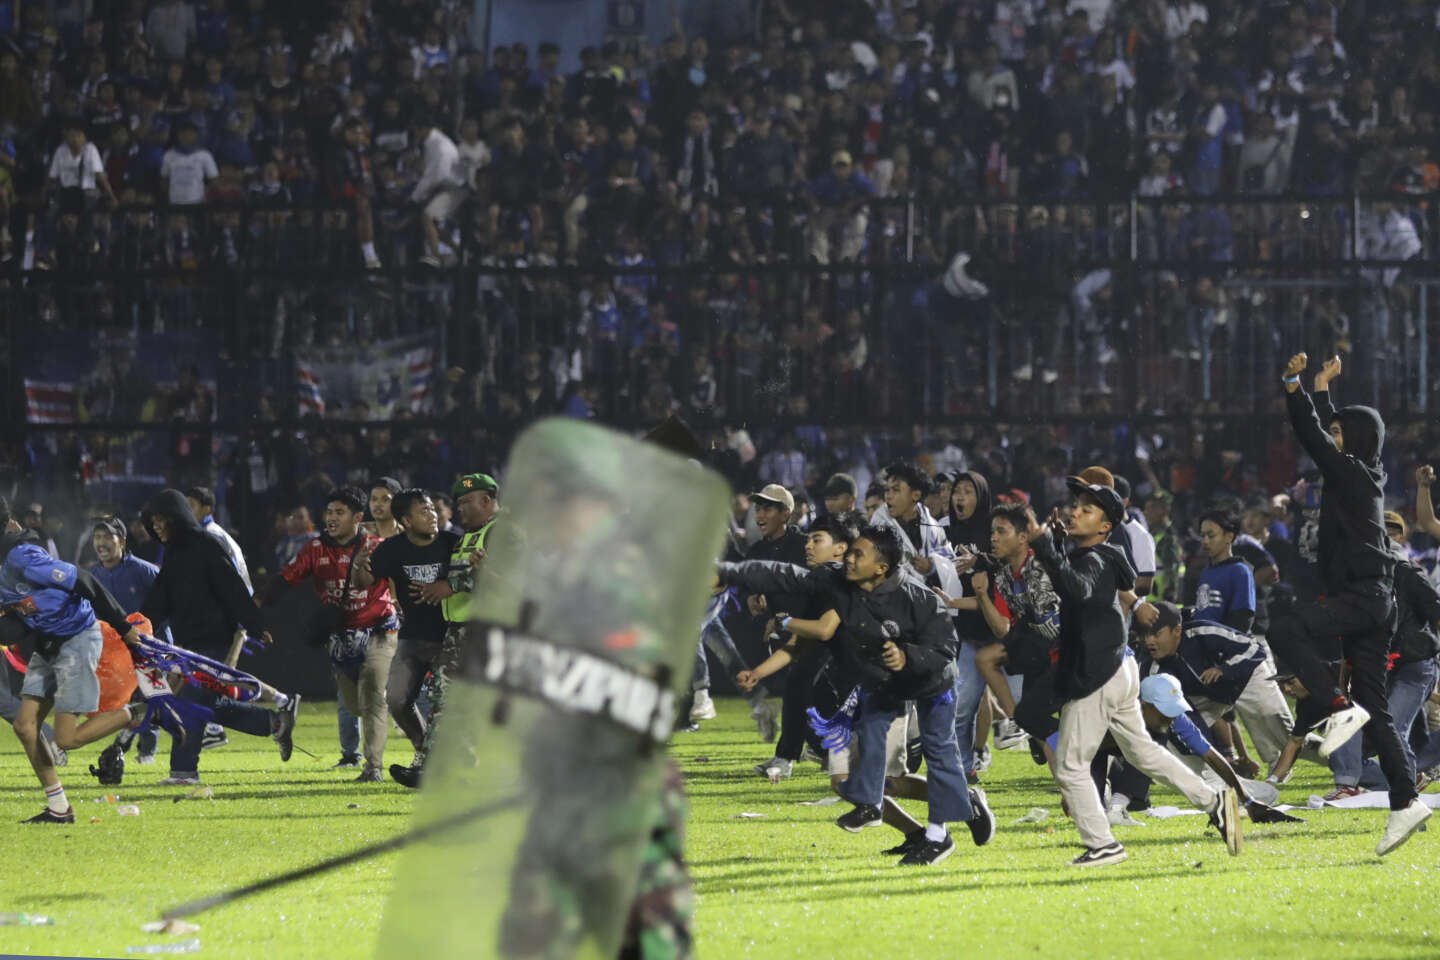 Indonésie : au moins 127 personnes sont mortes à la suite de bagarres et de mouvements de foule dans un stade de football